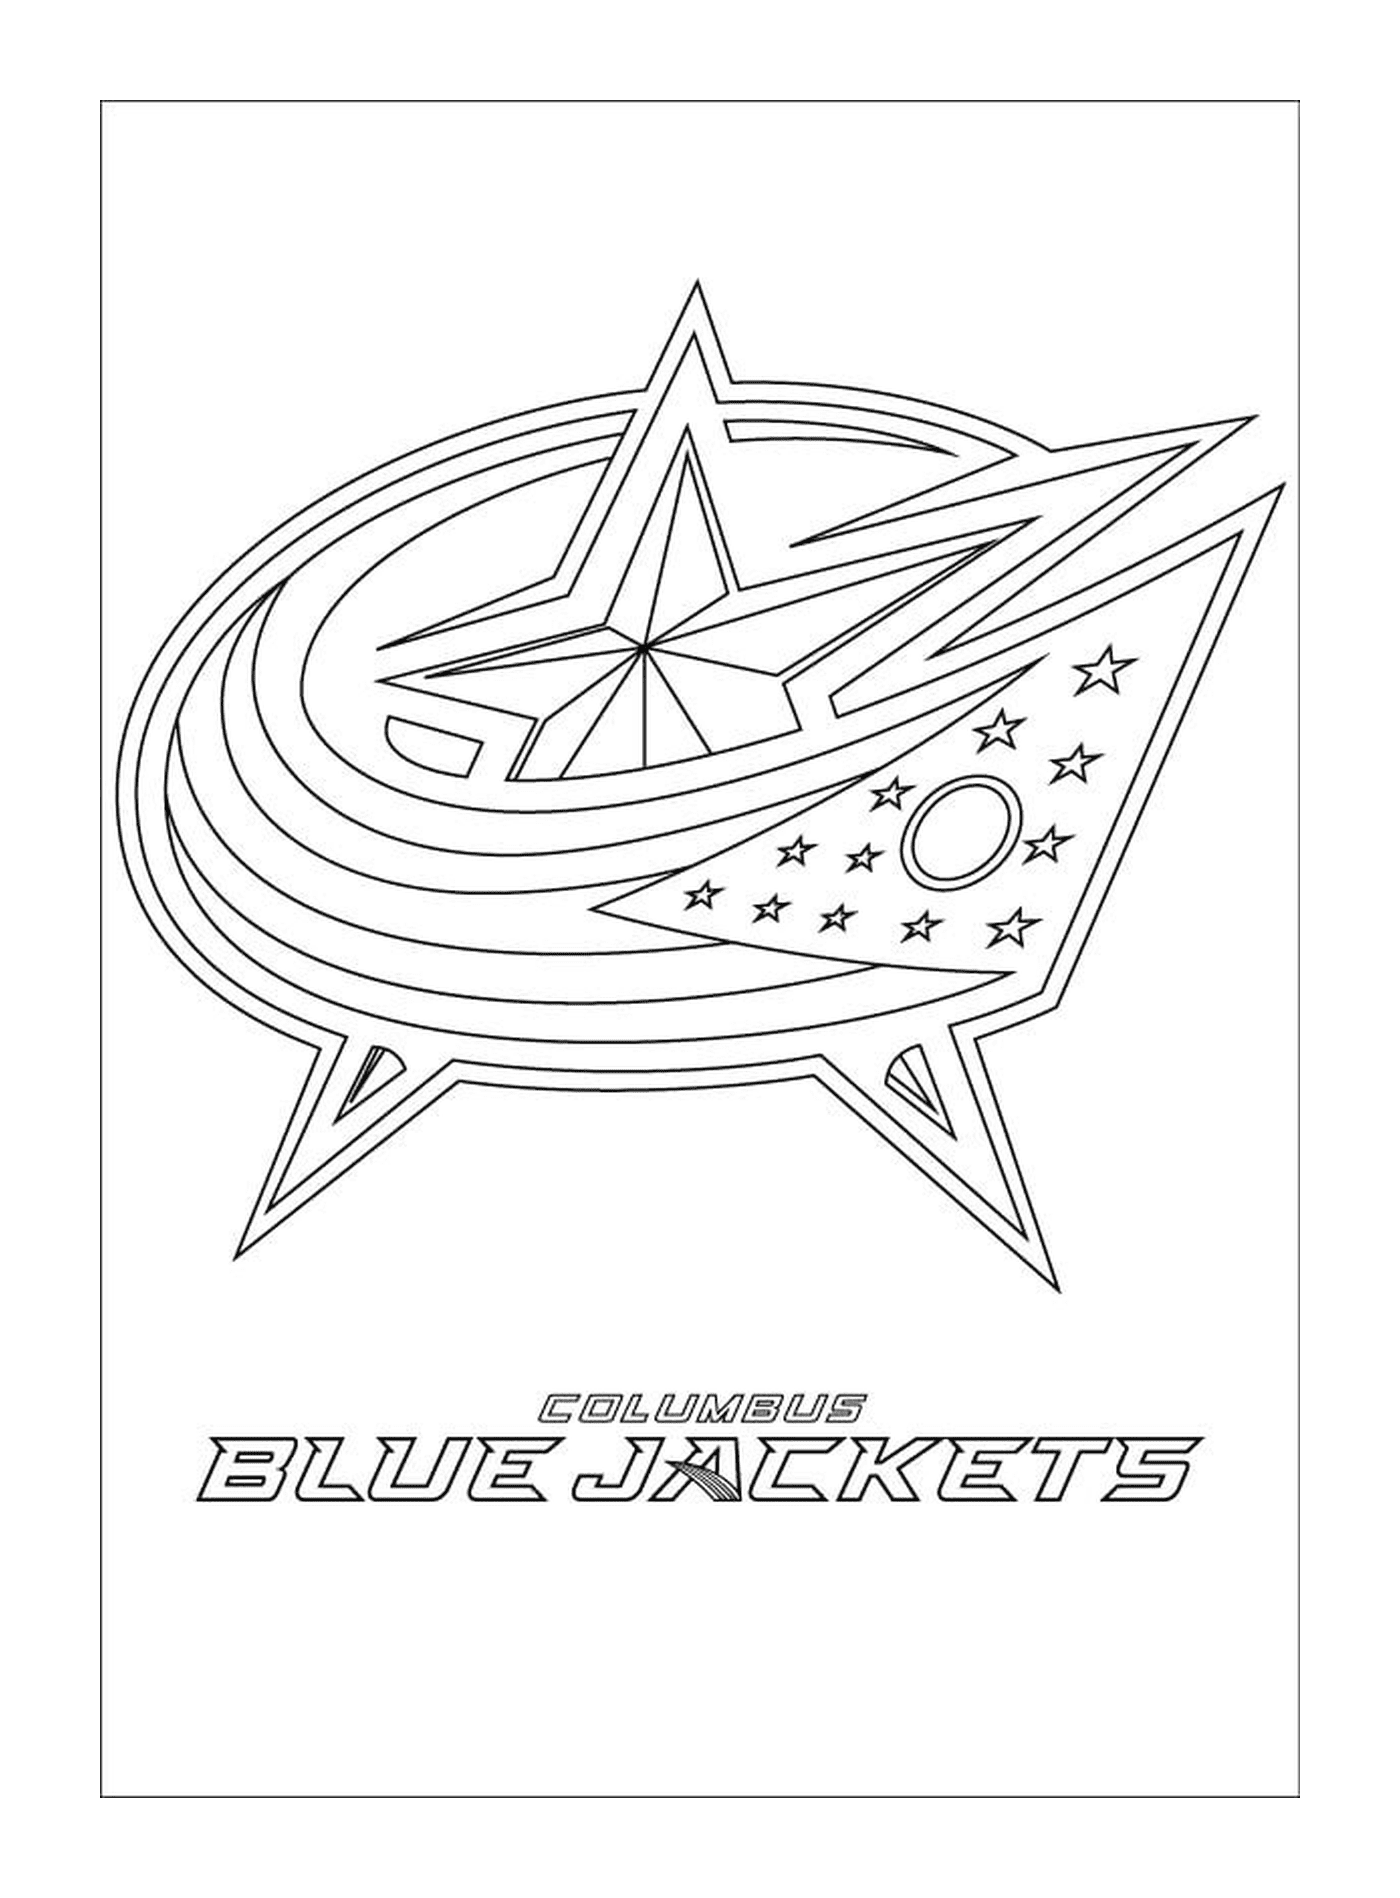  Columbus Blaue Jacken Logo 